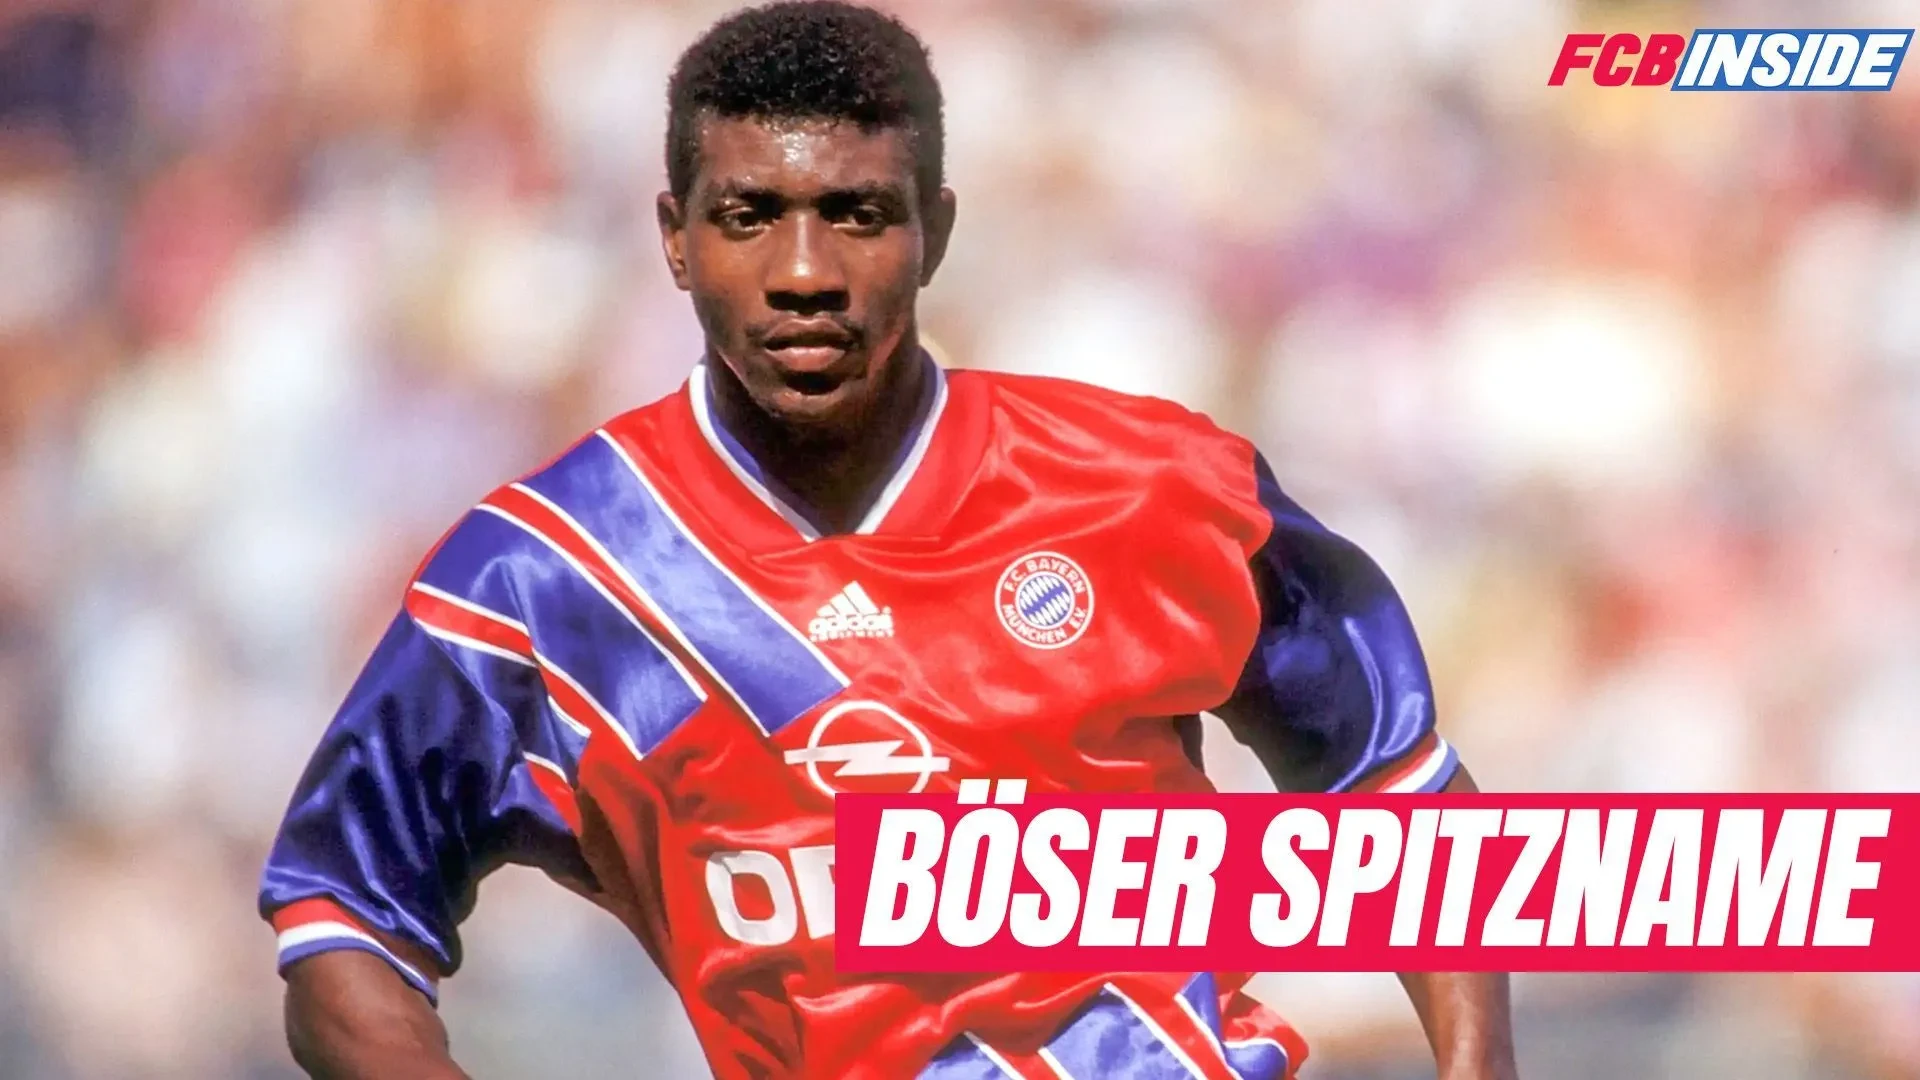 Dieser Bayern-Spieler hatte den wohl bösesten Spitznamen der Bundesliga